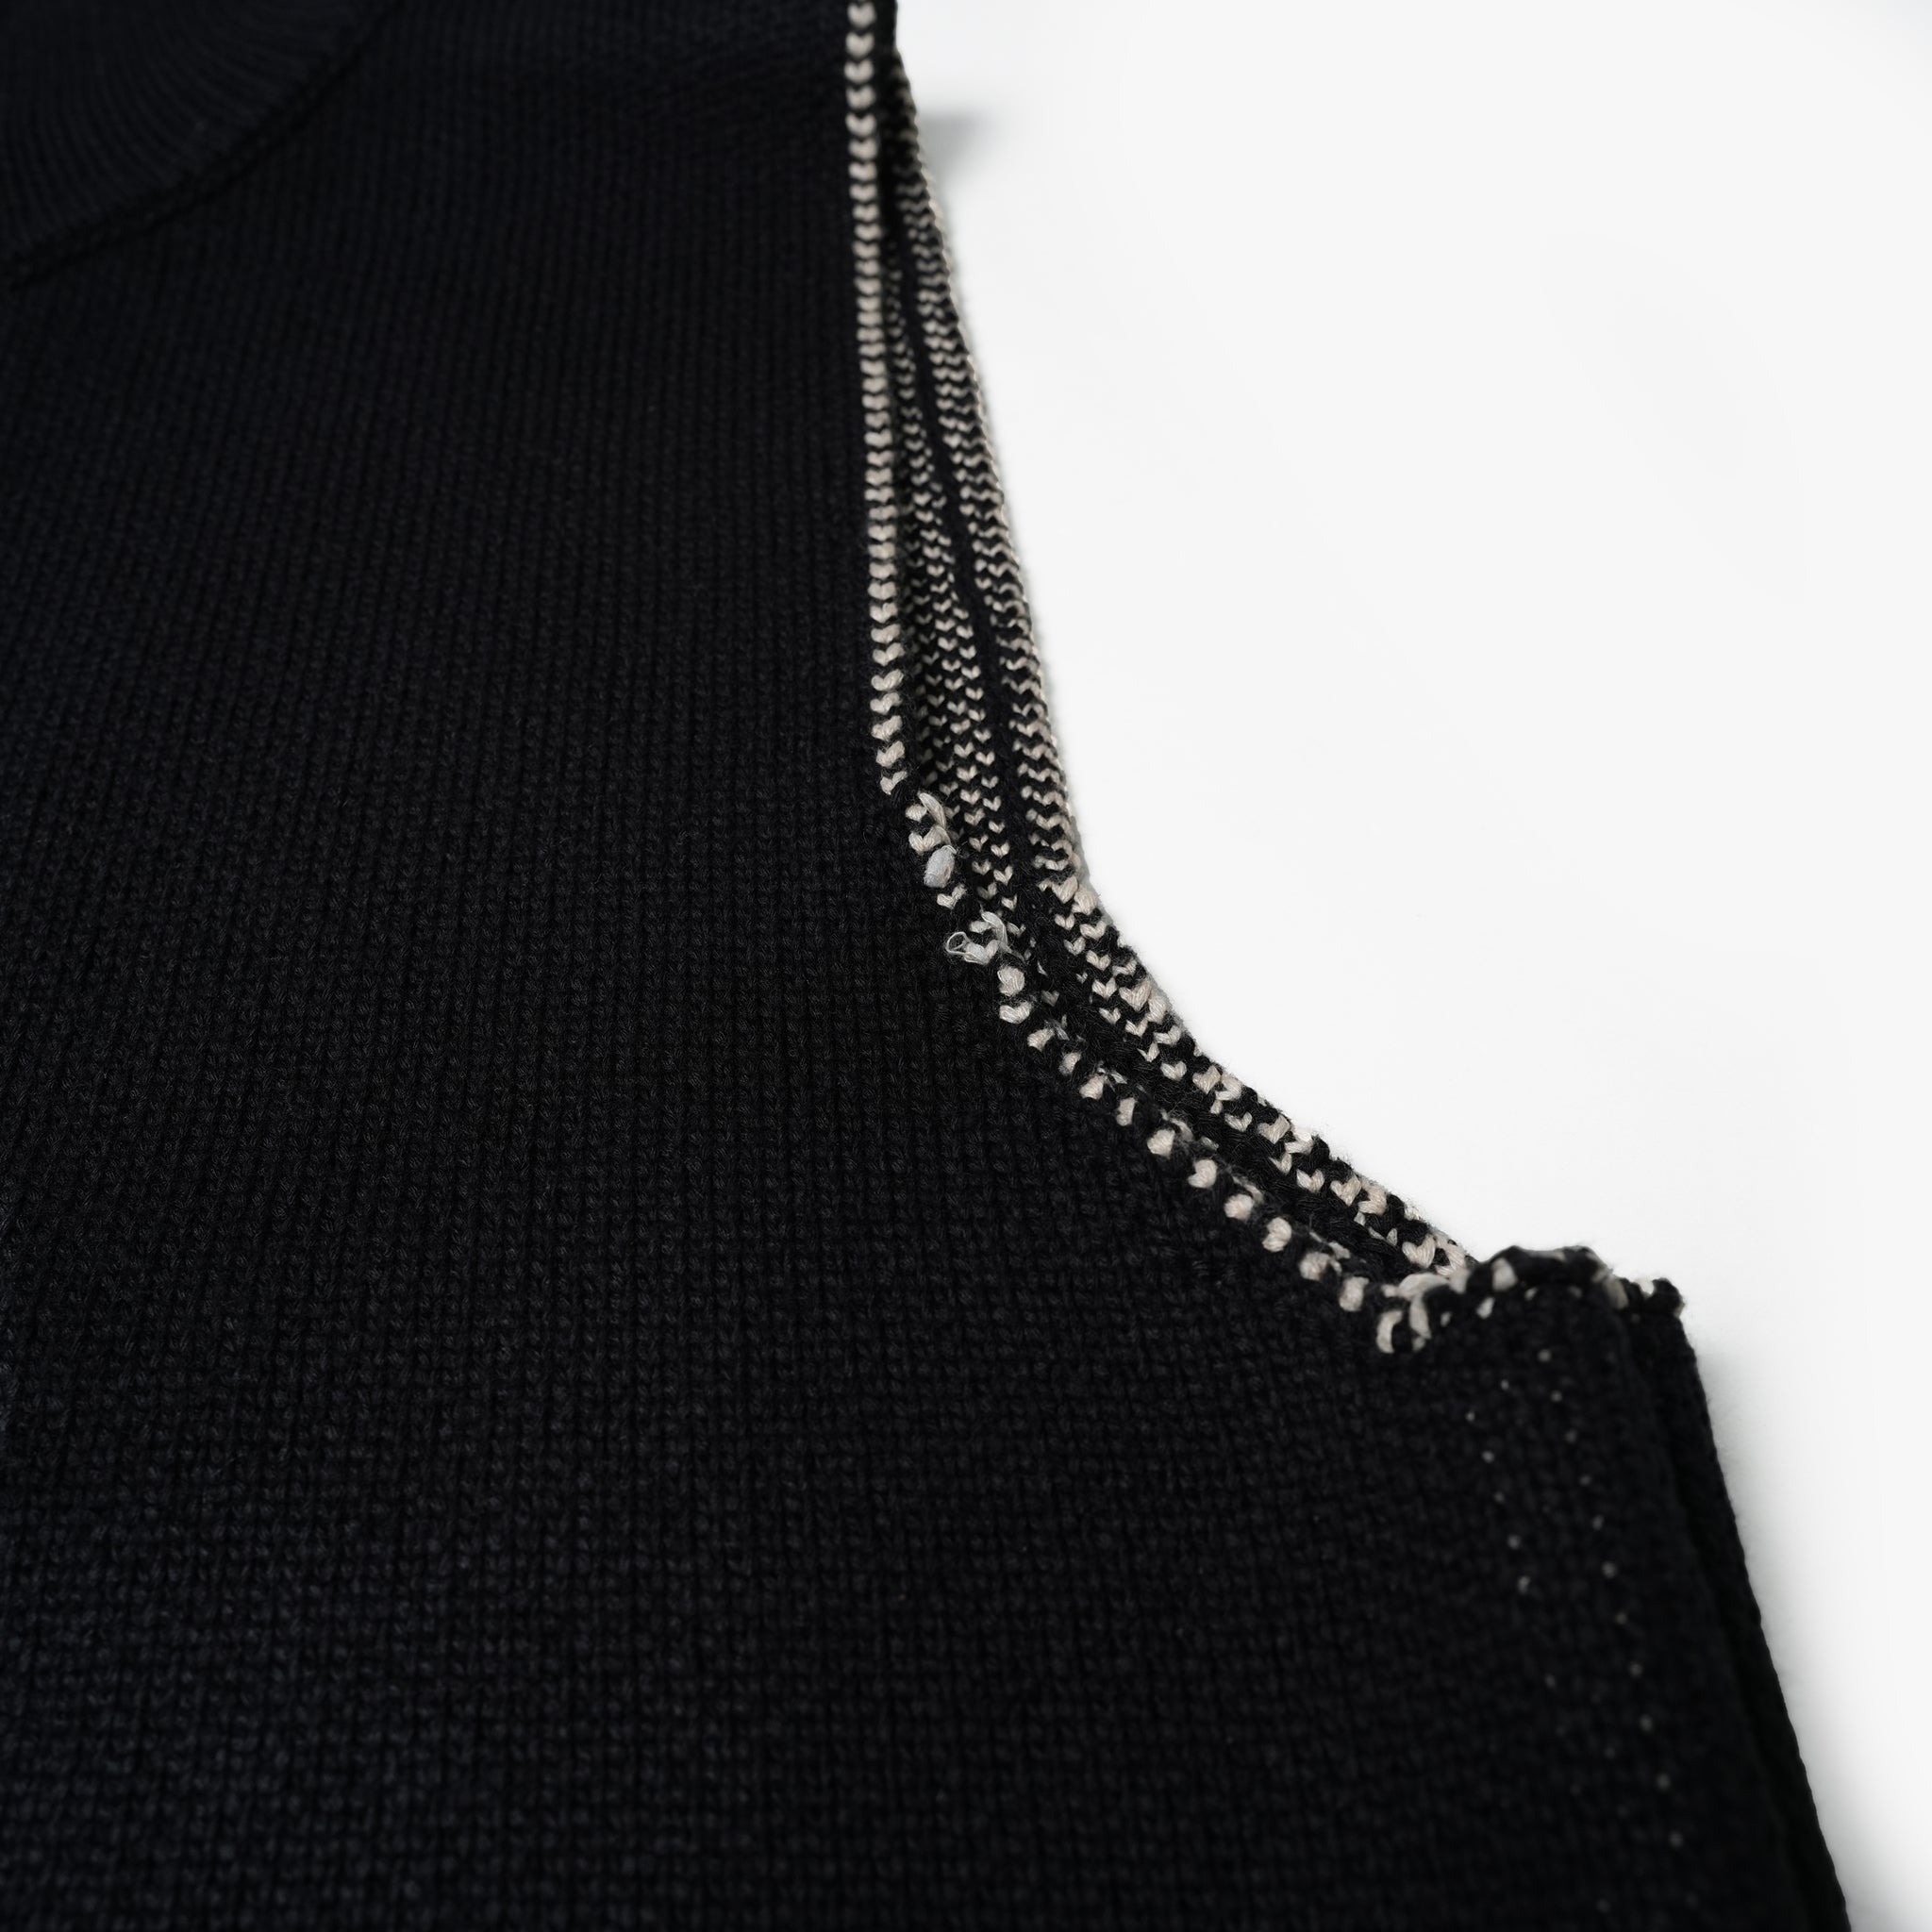 Name:Fringe Vest Sweater | Color:Black【AMBERGLEAM_アンバーグリーム】| No:1108121213